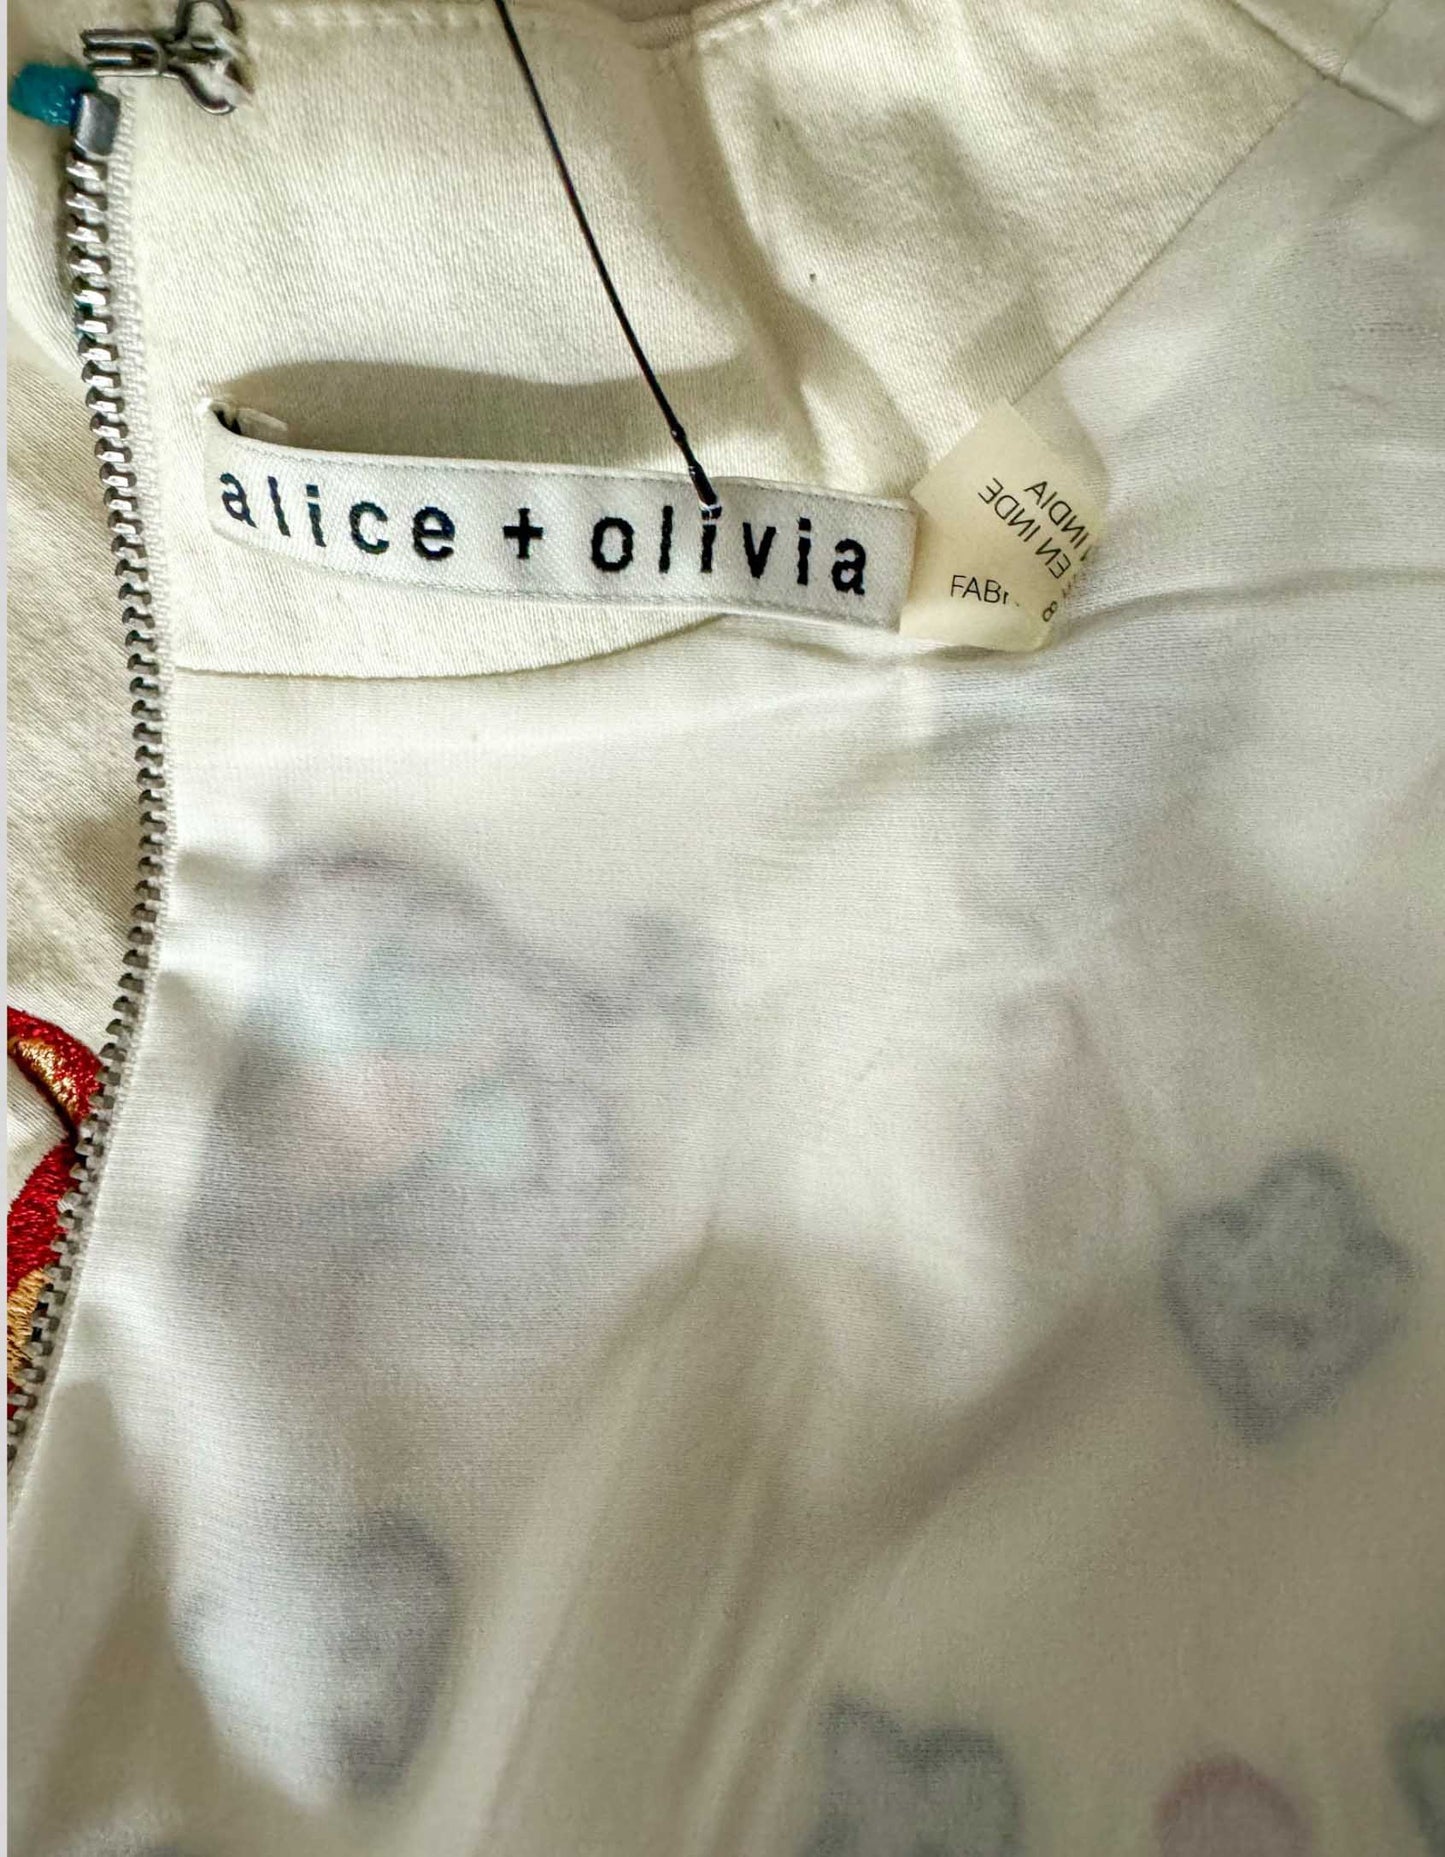 ALICE + OLIVIA Floral embroidered midi dress - 8 US